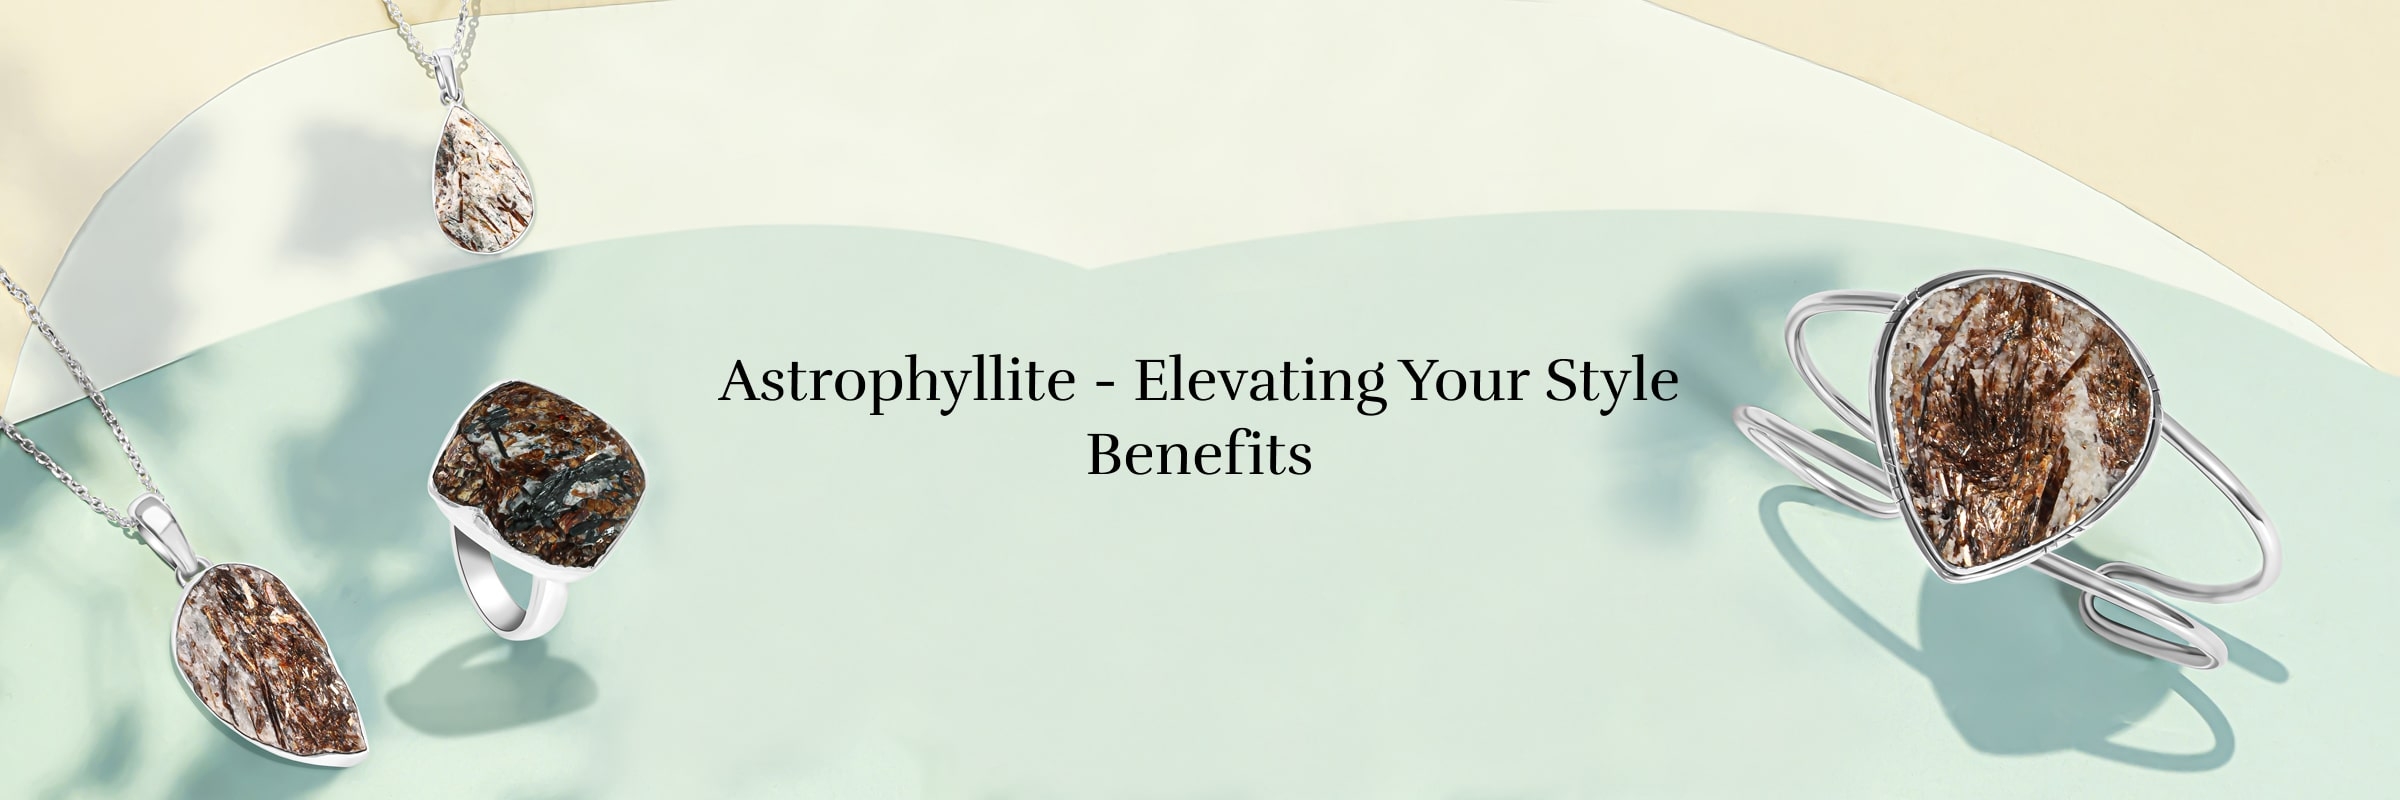 Benefits of Wearing Astrophyllite Jewel